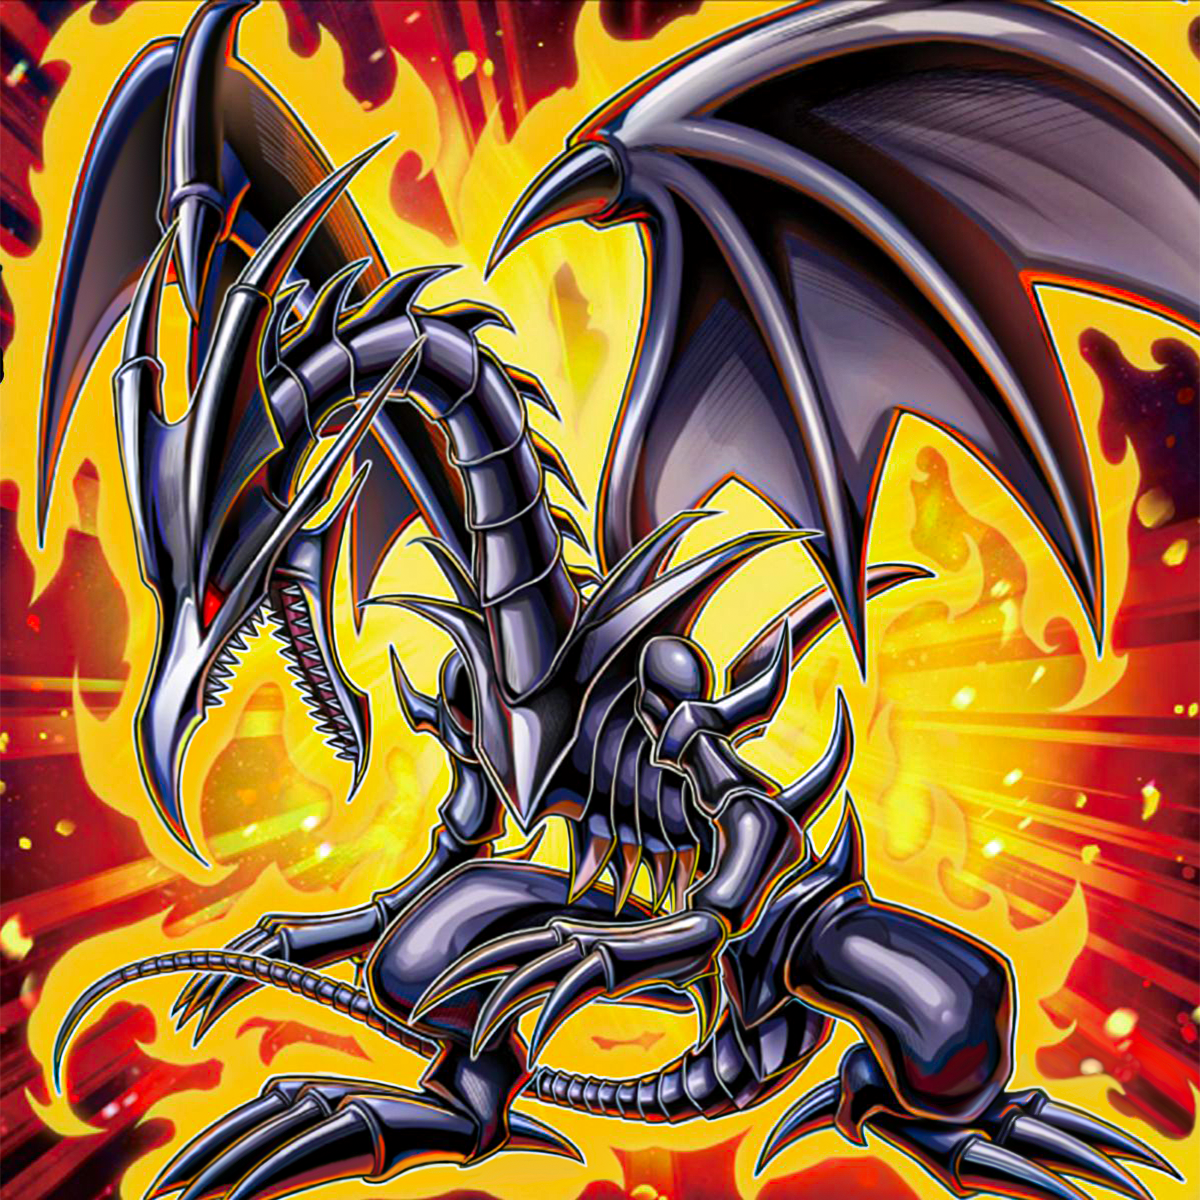 red eyes black metal dragon girl